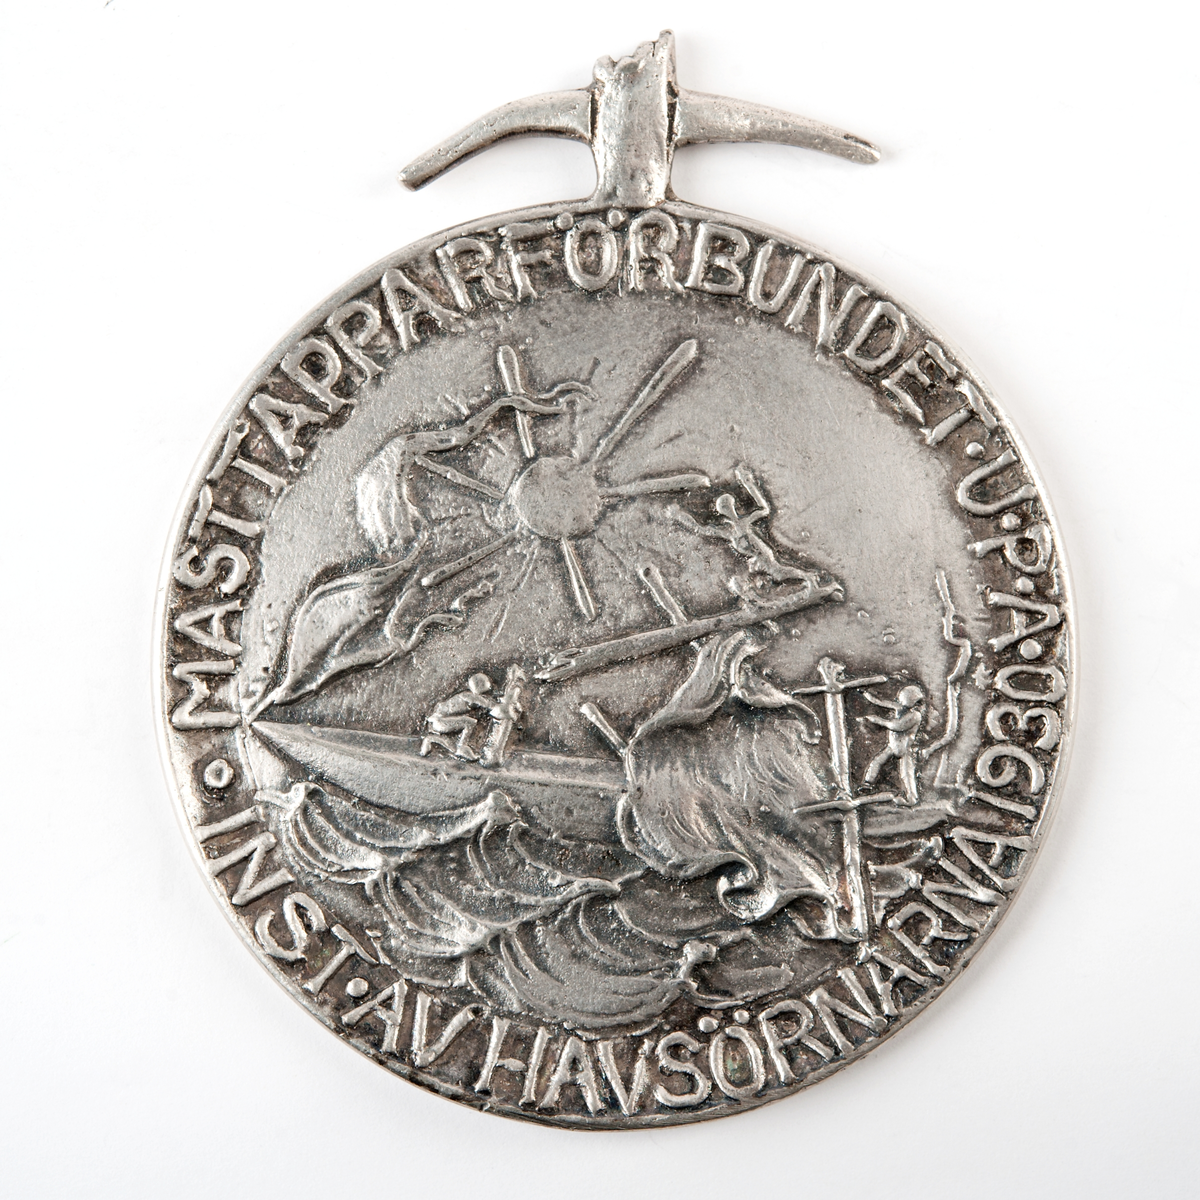 Åtsidan avbildar ett masthaveri. Frånsidan namnet inristat på avbruten maststump. Medaljen kröns av bruten mast med krökta rår.